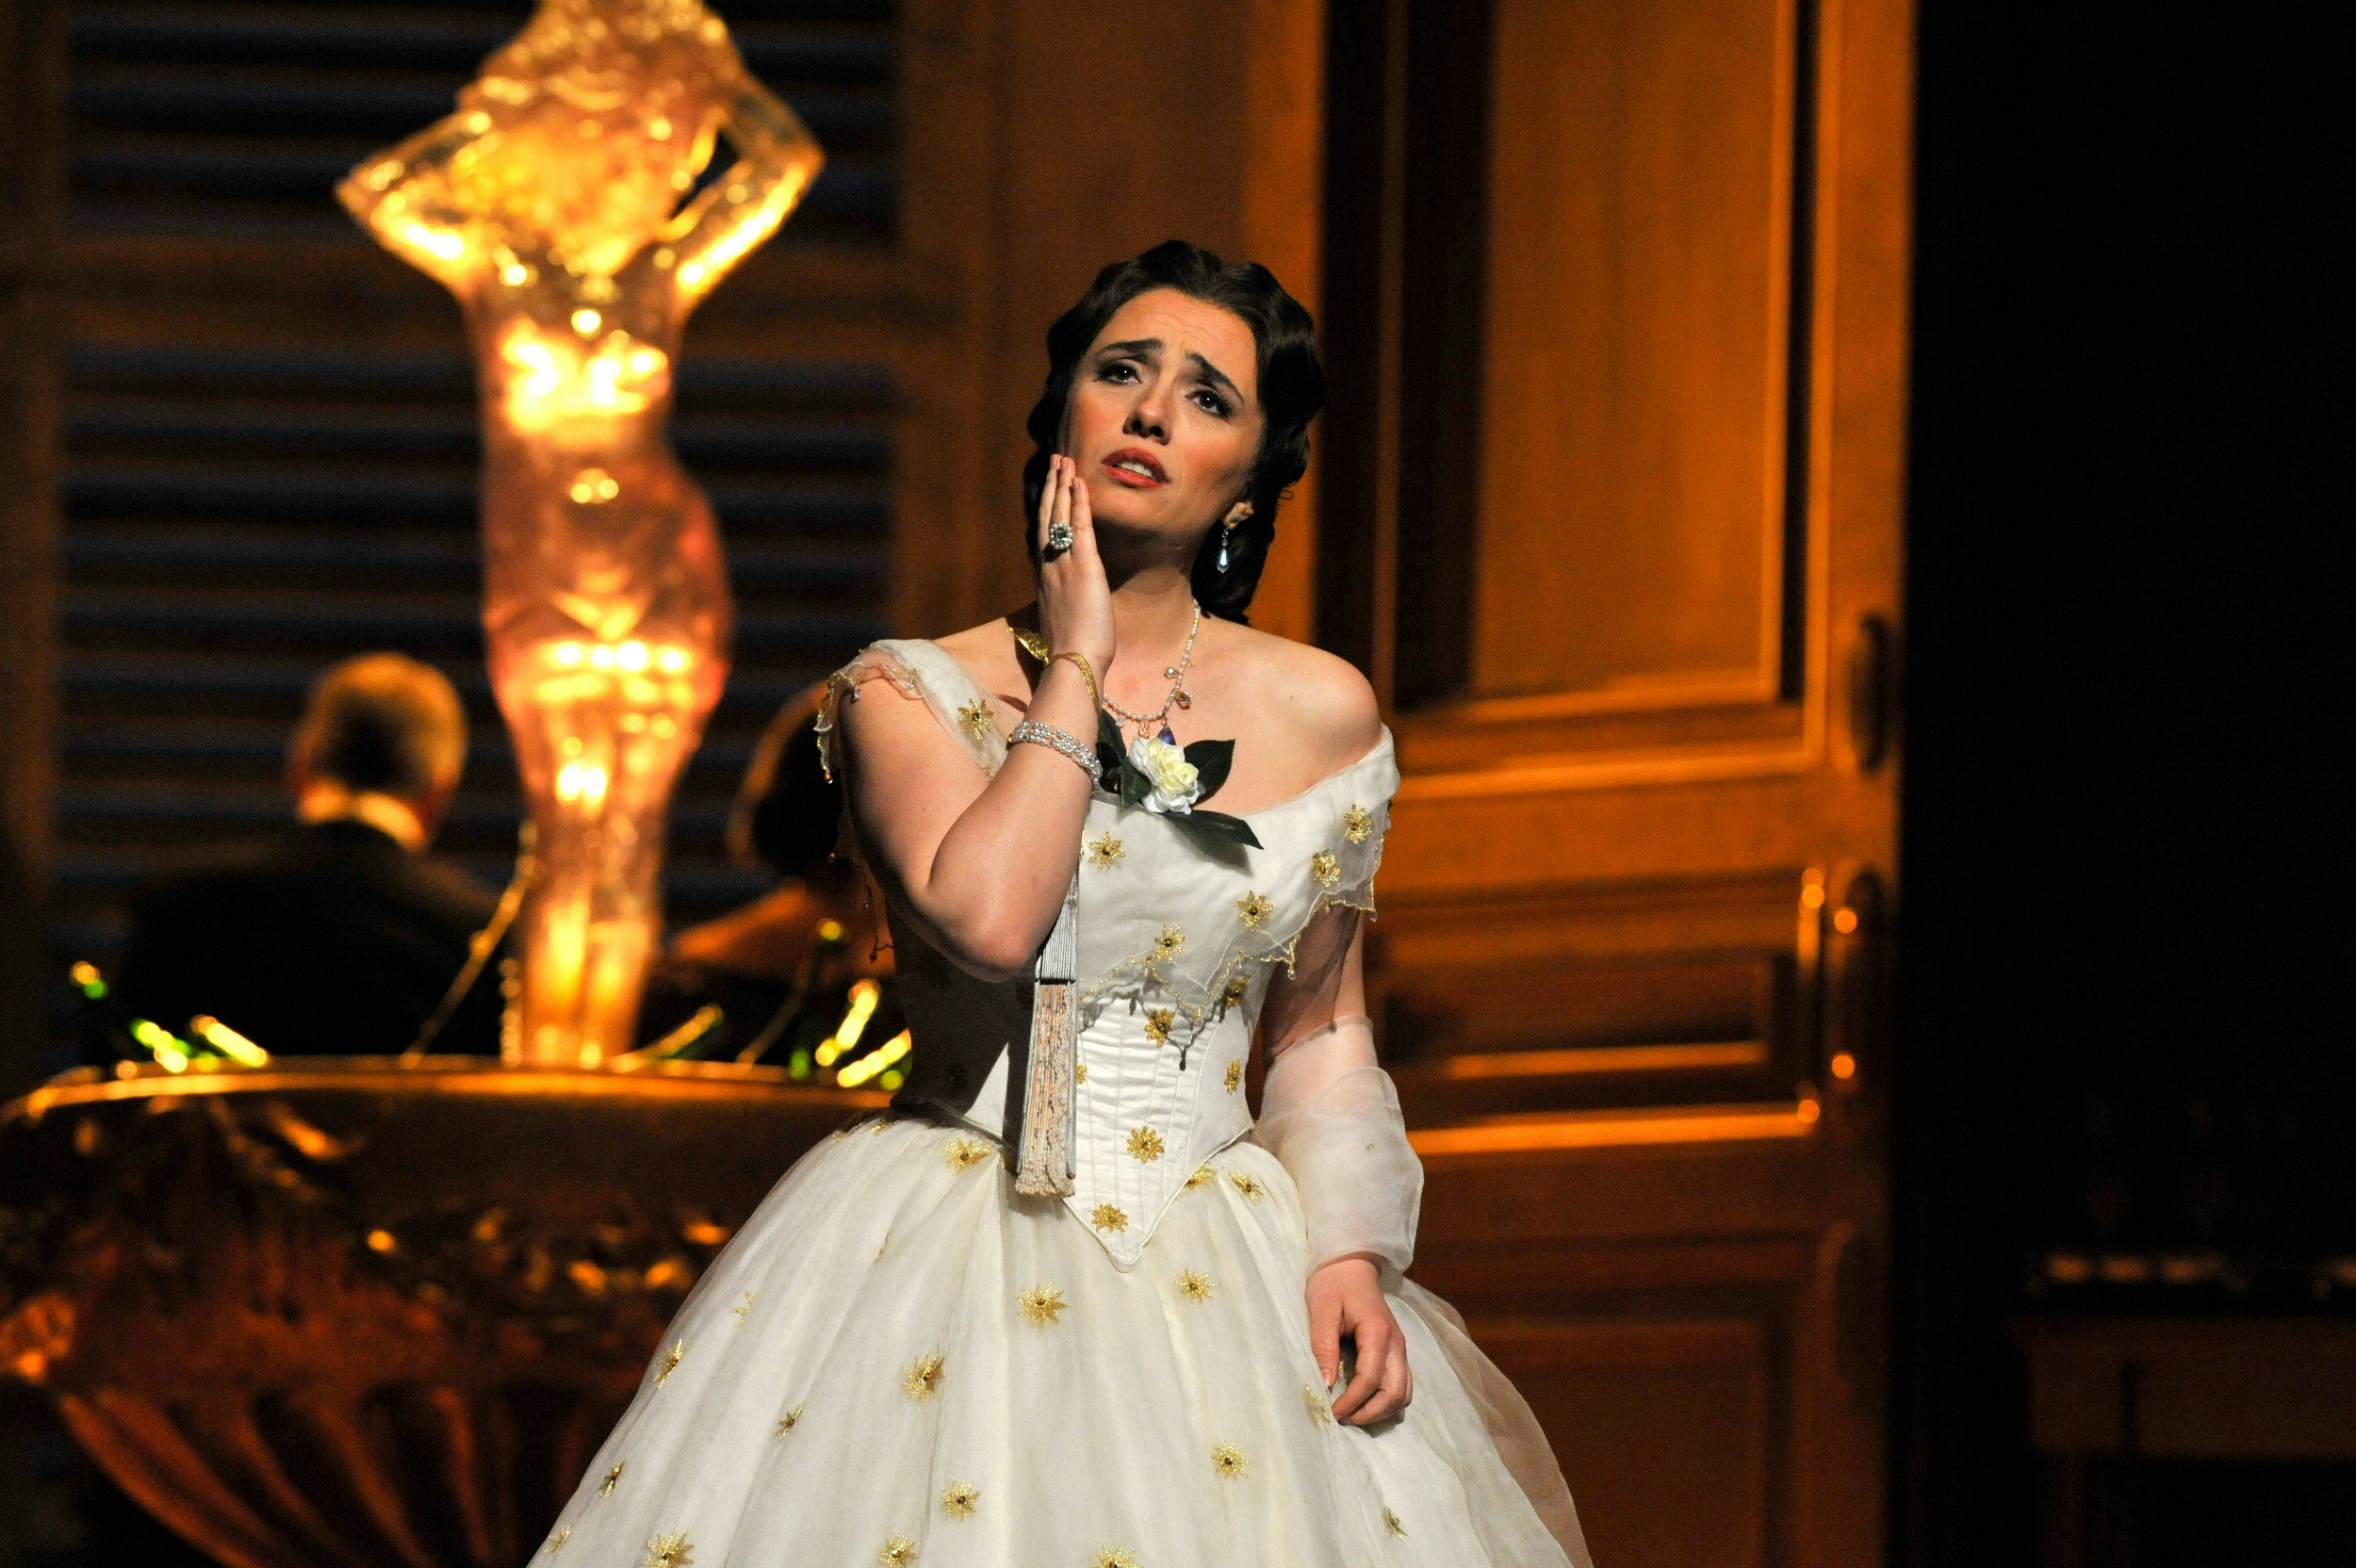 Ermonela Jaho as Violetta Valery in the Royal Opera's production of Verdi's La Traviata